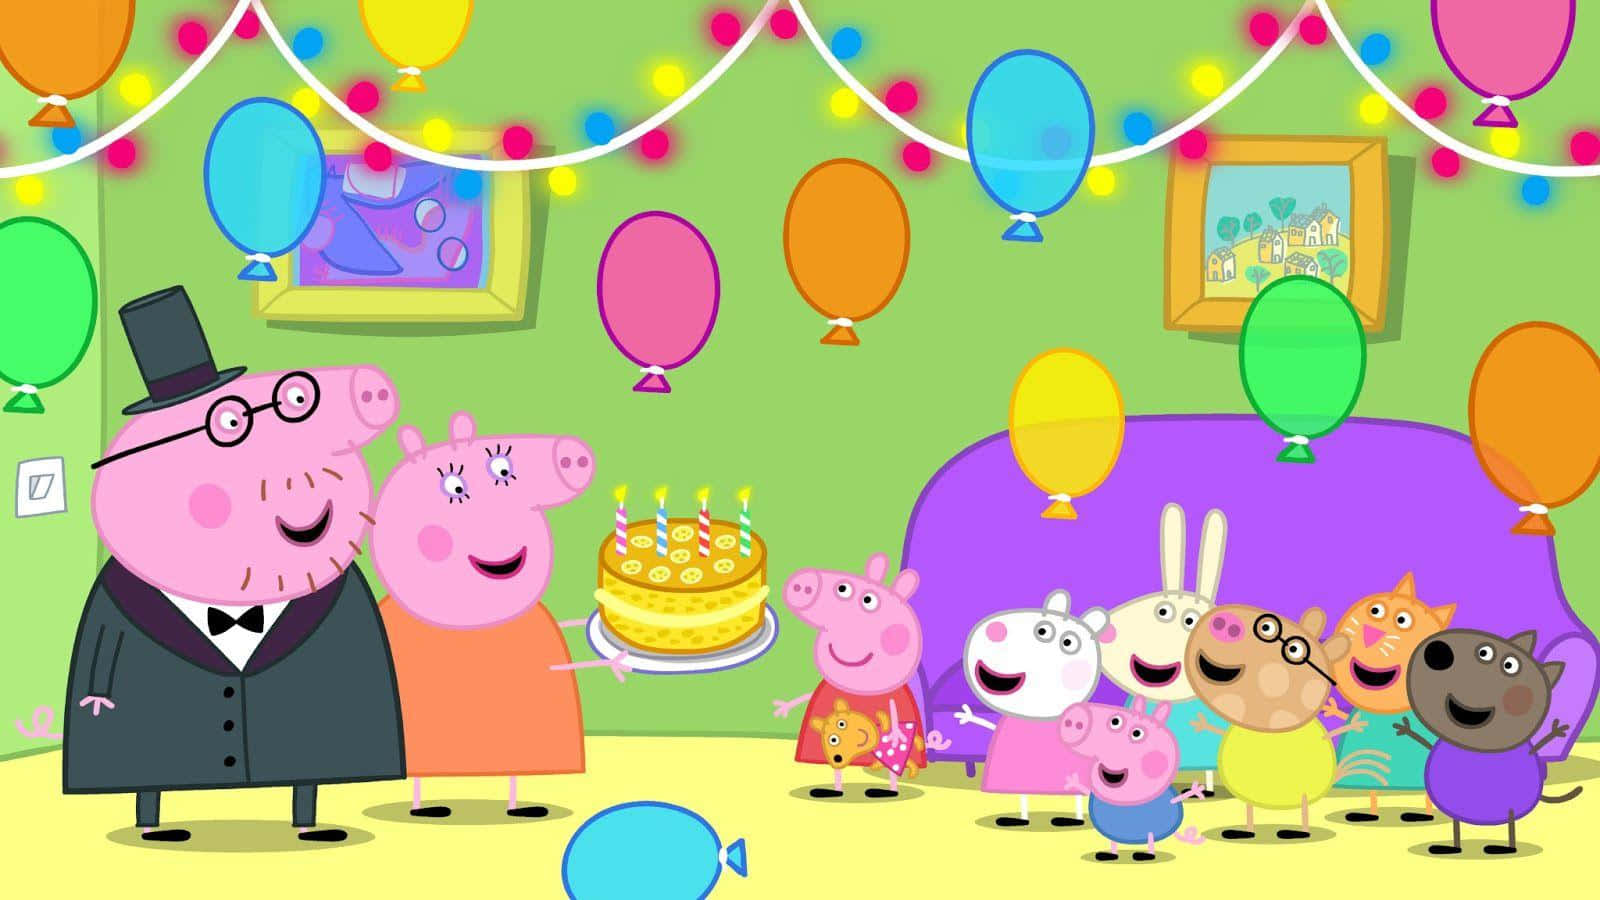 Canciónde Cumpleaños Con Los Amigos En El Fondo De Peppa Pig